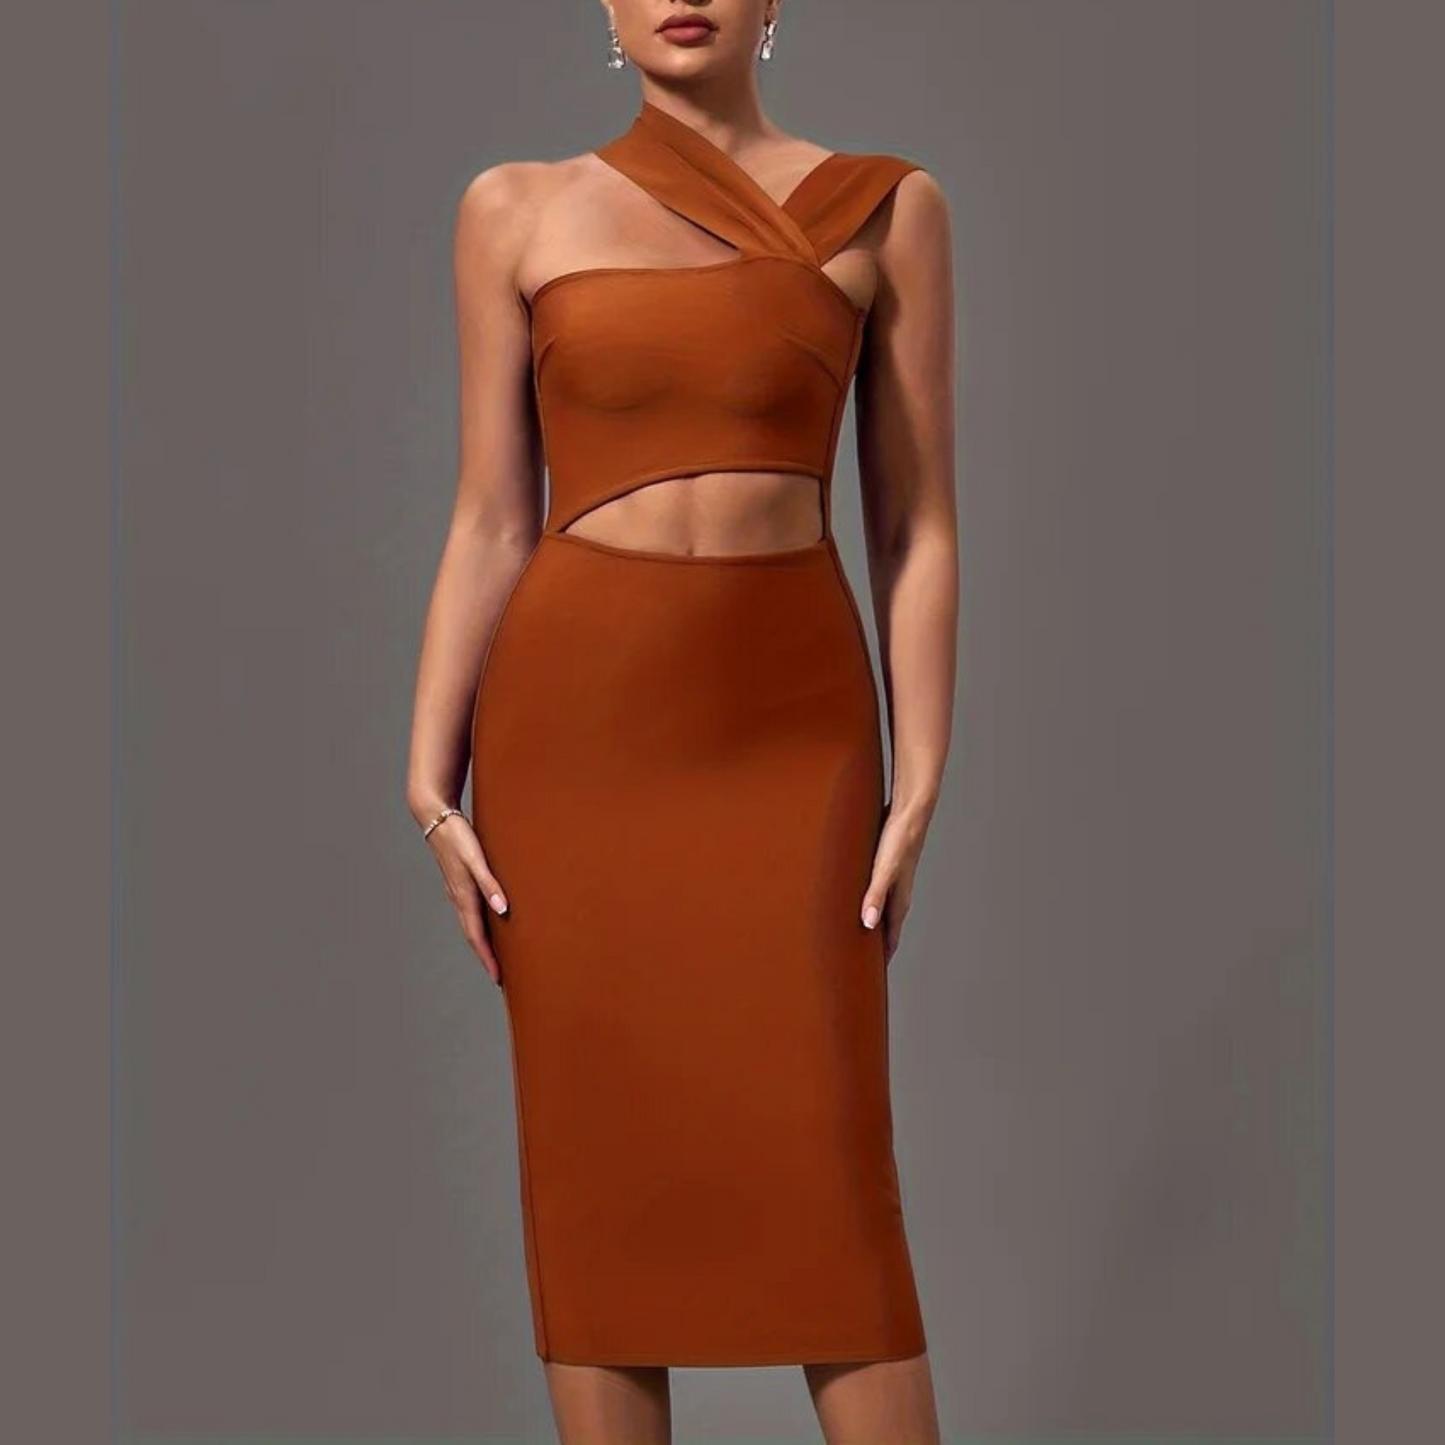 Lala - Brown Cut Out Midi Bandage Dress